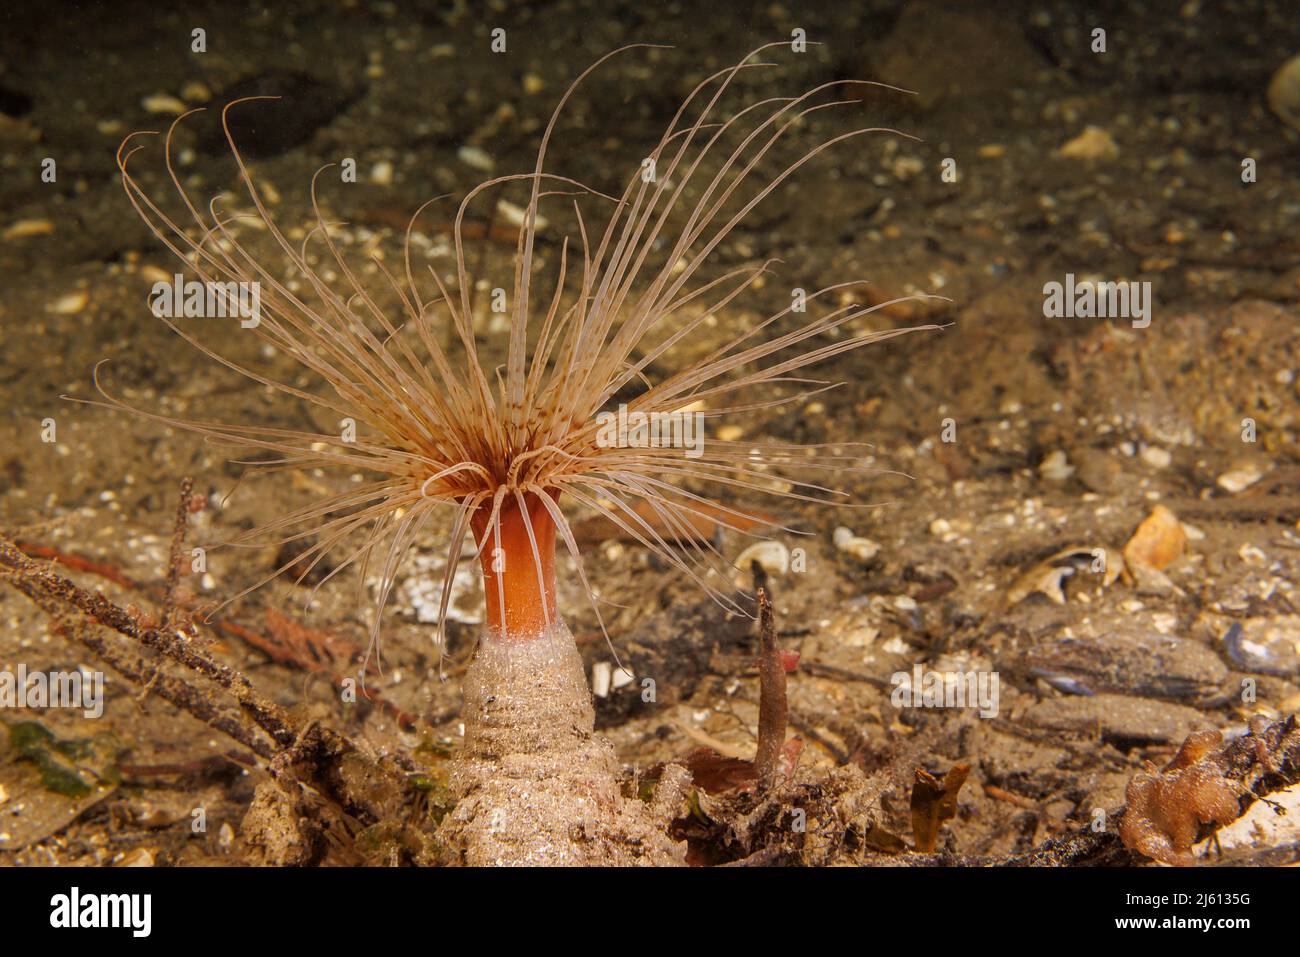 L'anémone de la cheminée d'alimentation, Pachycerianthus fimbriatus, peut se tirer sous la surface lorsqu'elle est menacée, Colombie-Britannique, Canada. Banque D'Images